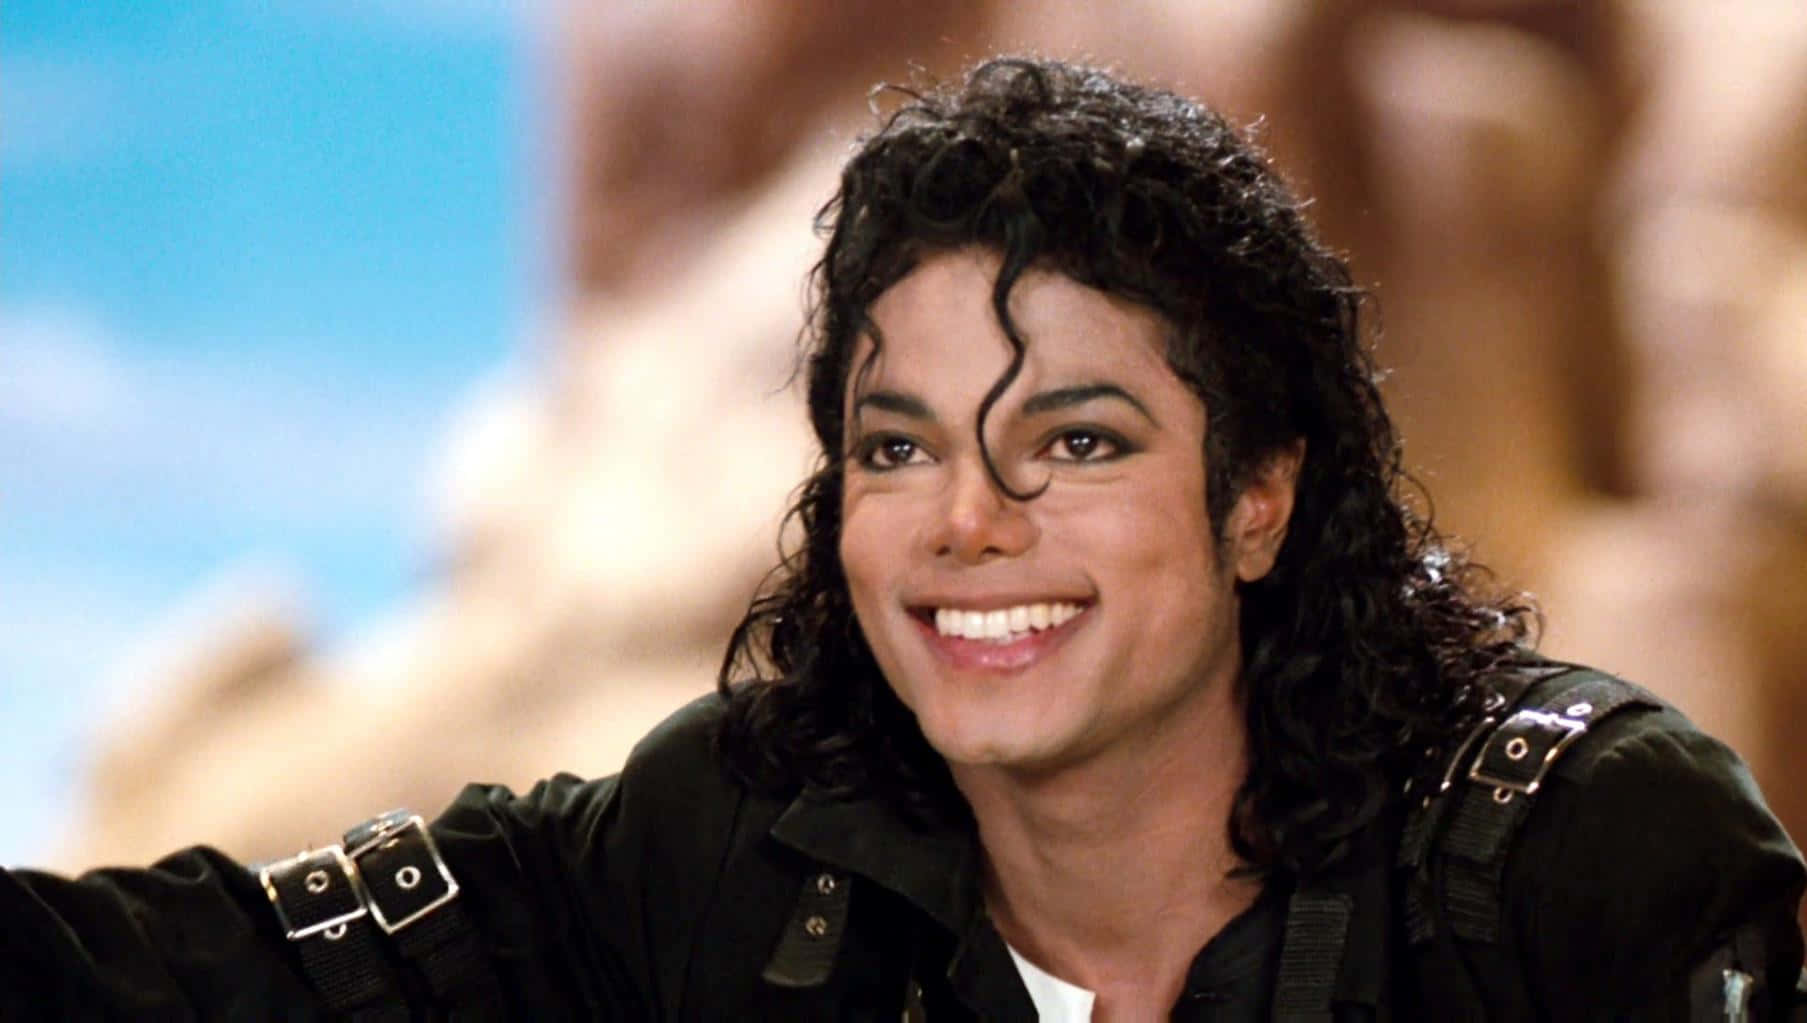 Billeder af Michael Jackson på et sort og hvid flise.